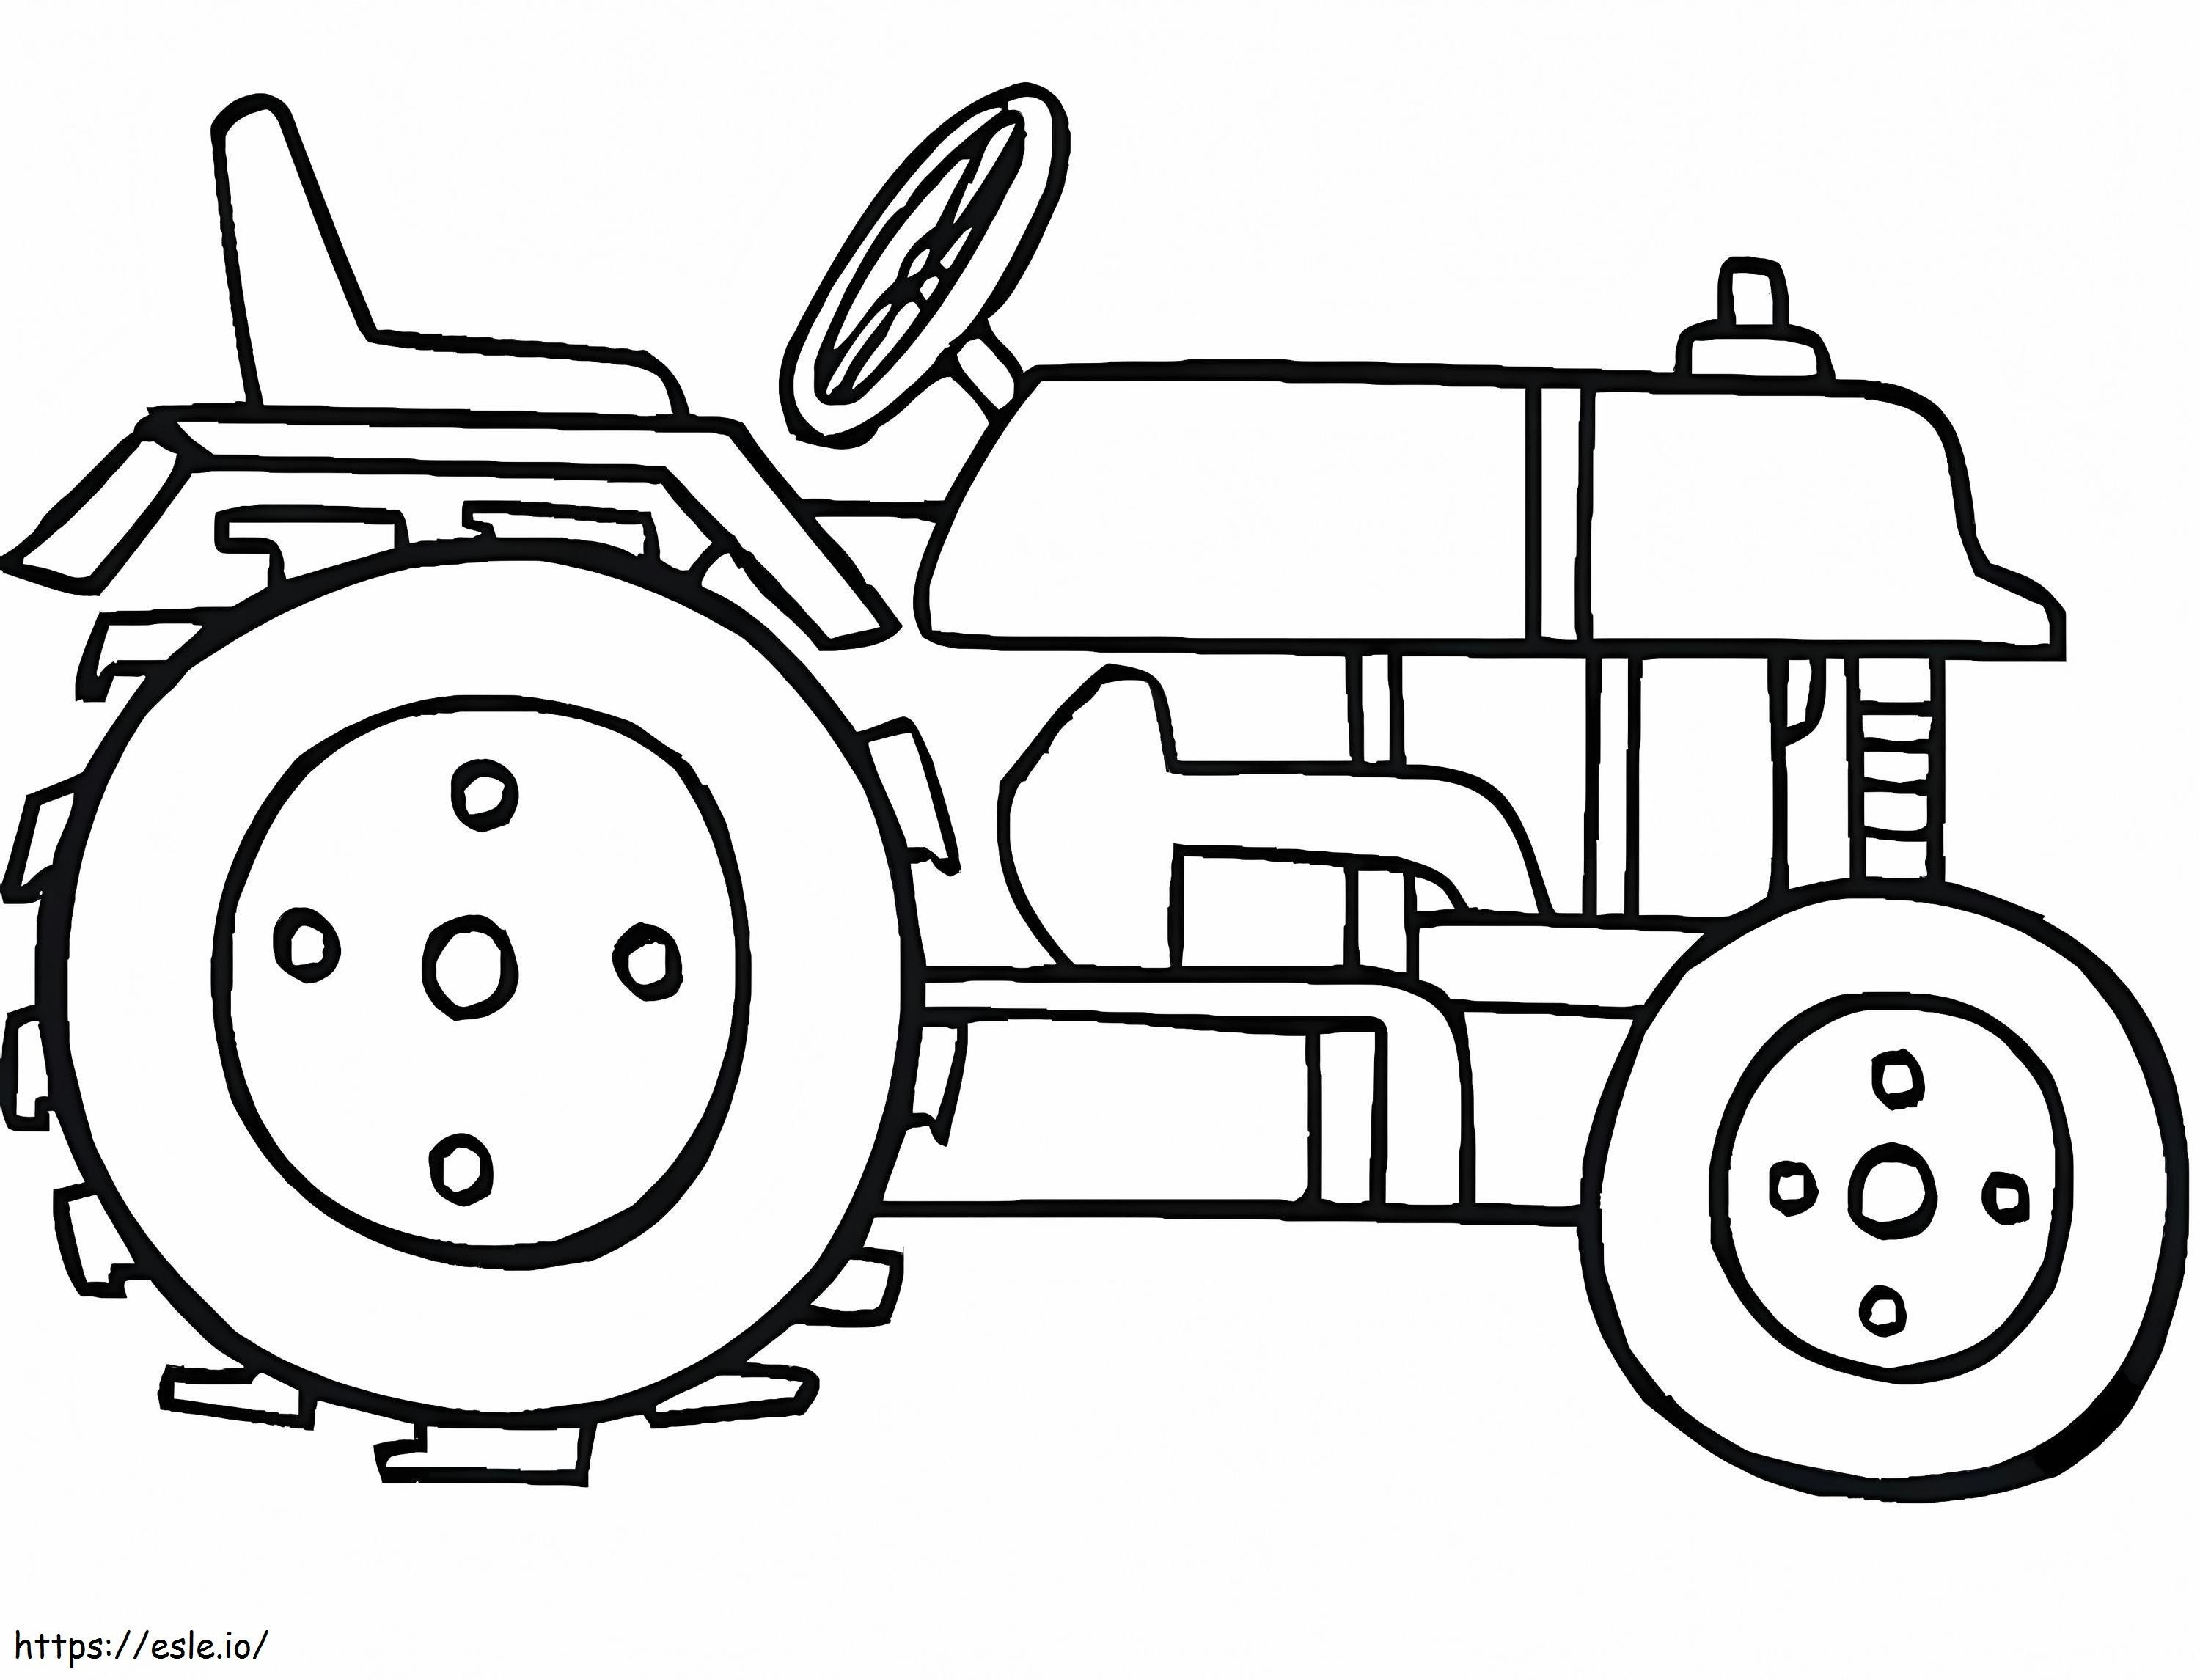 Coloriage Tracteur normal 2 1024X782 à imprimer dessin